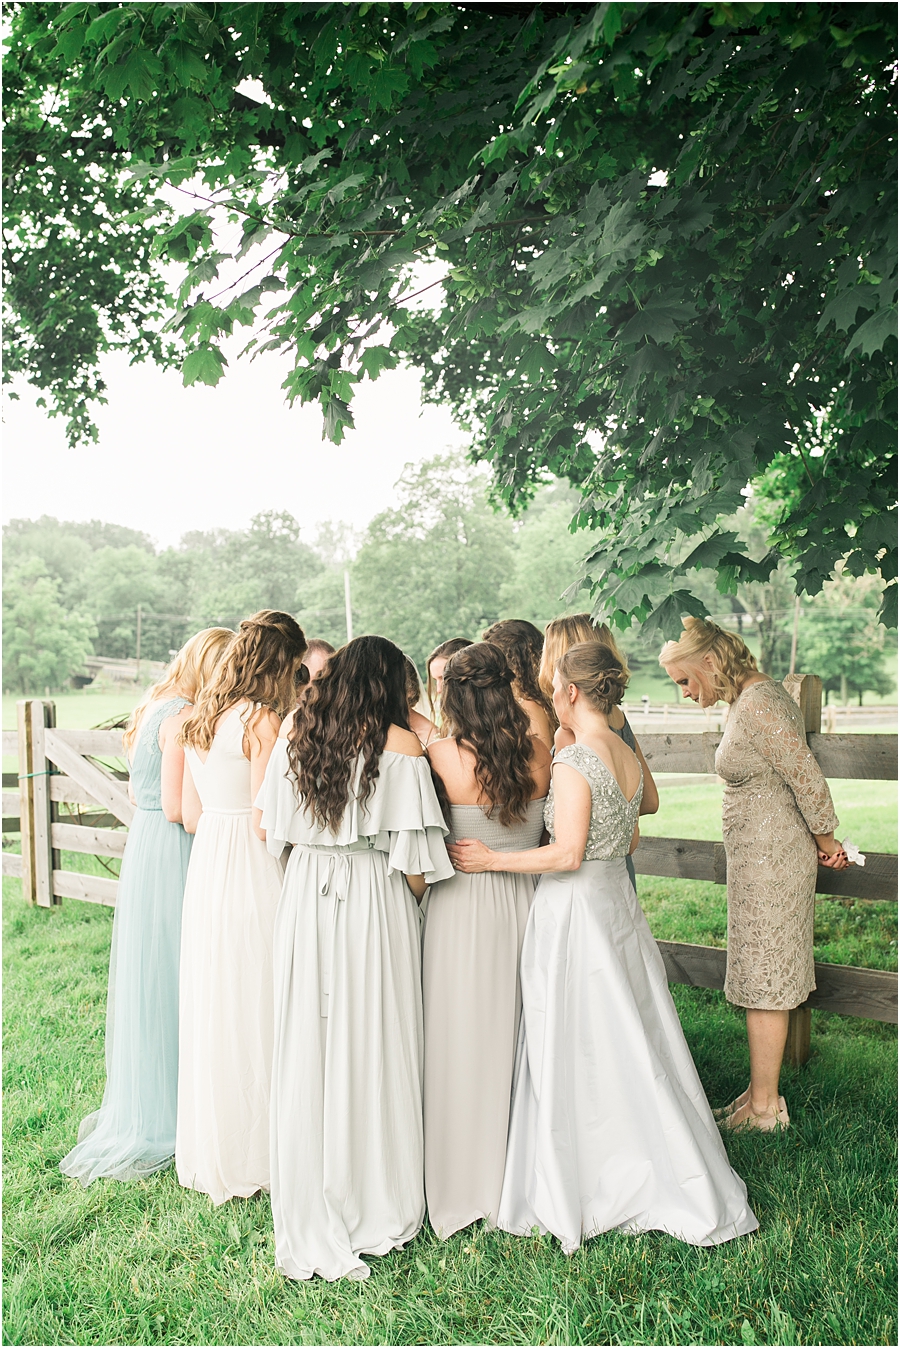 Durham Hill Farm Wedding by Film Photographer Hillary Muelleck